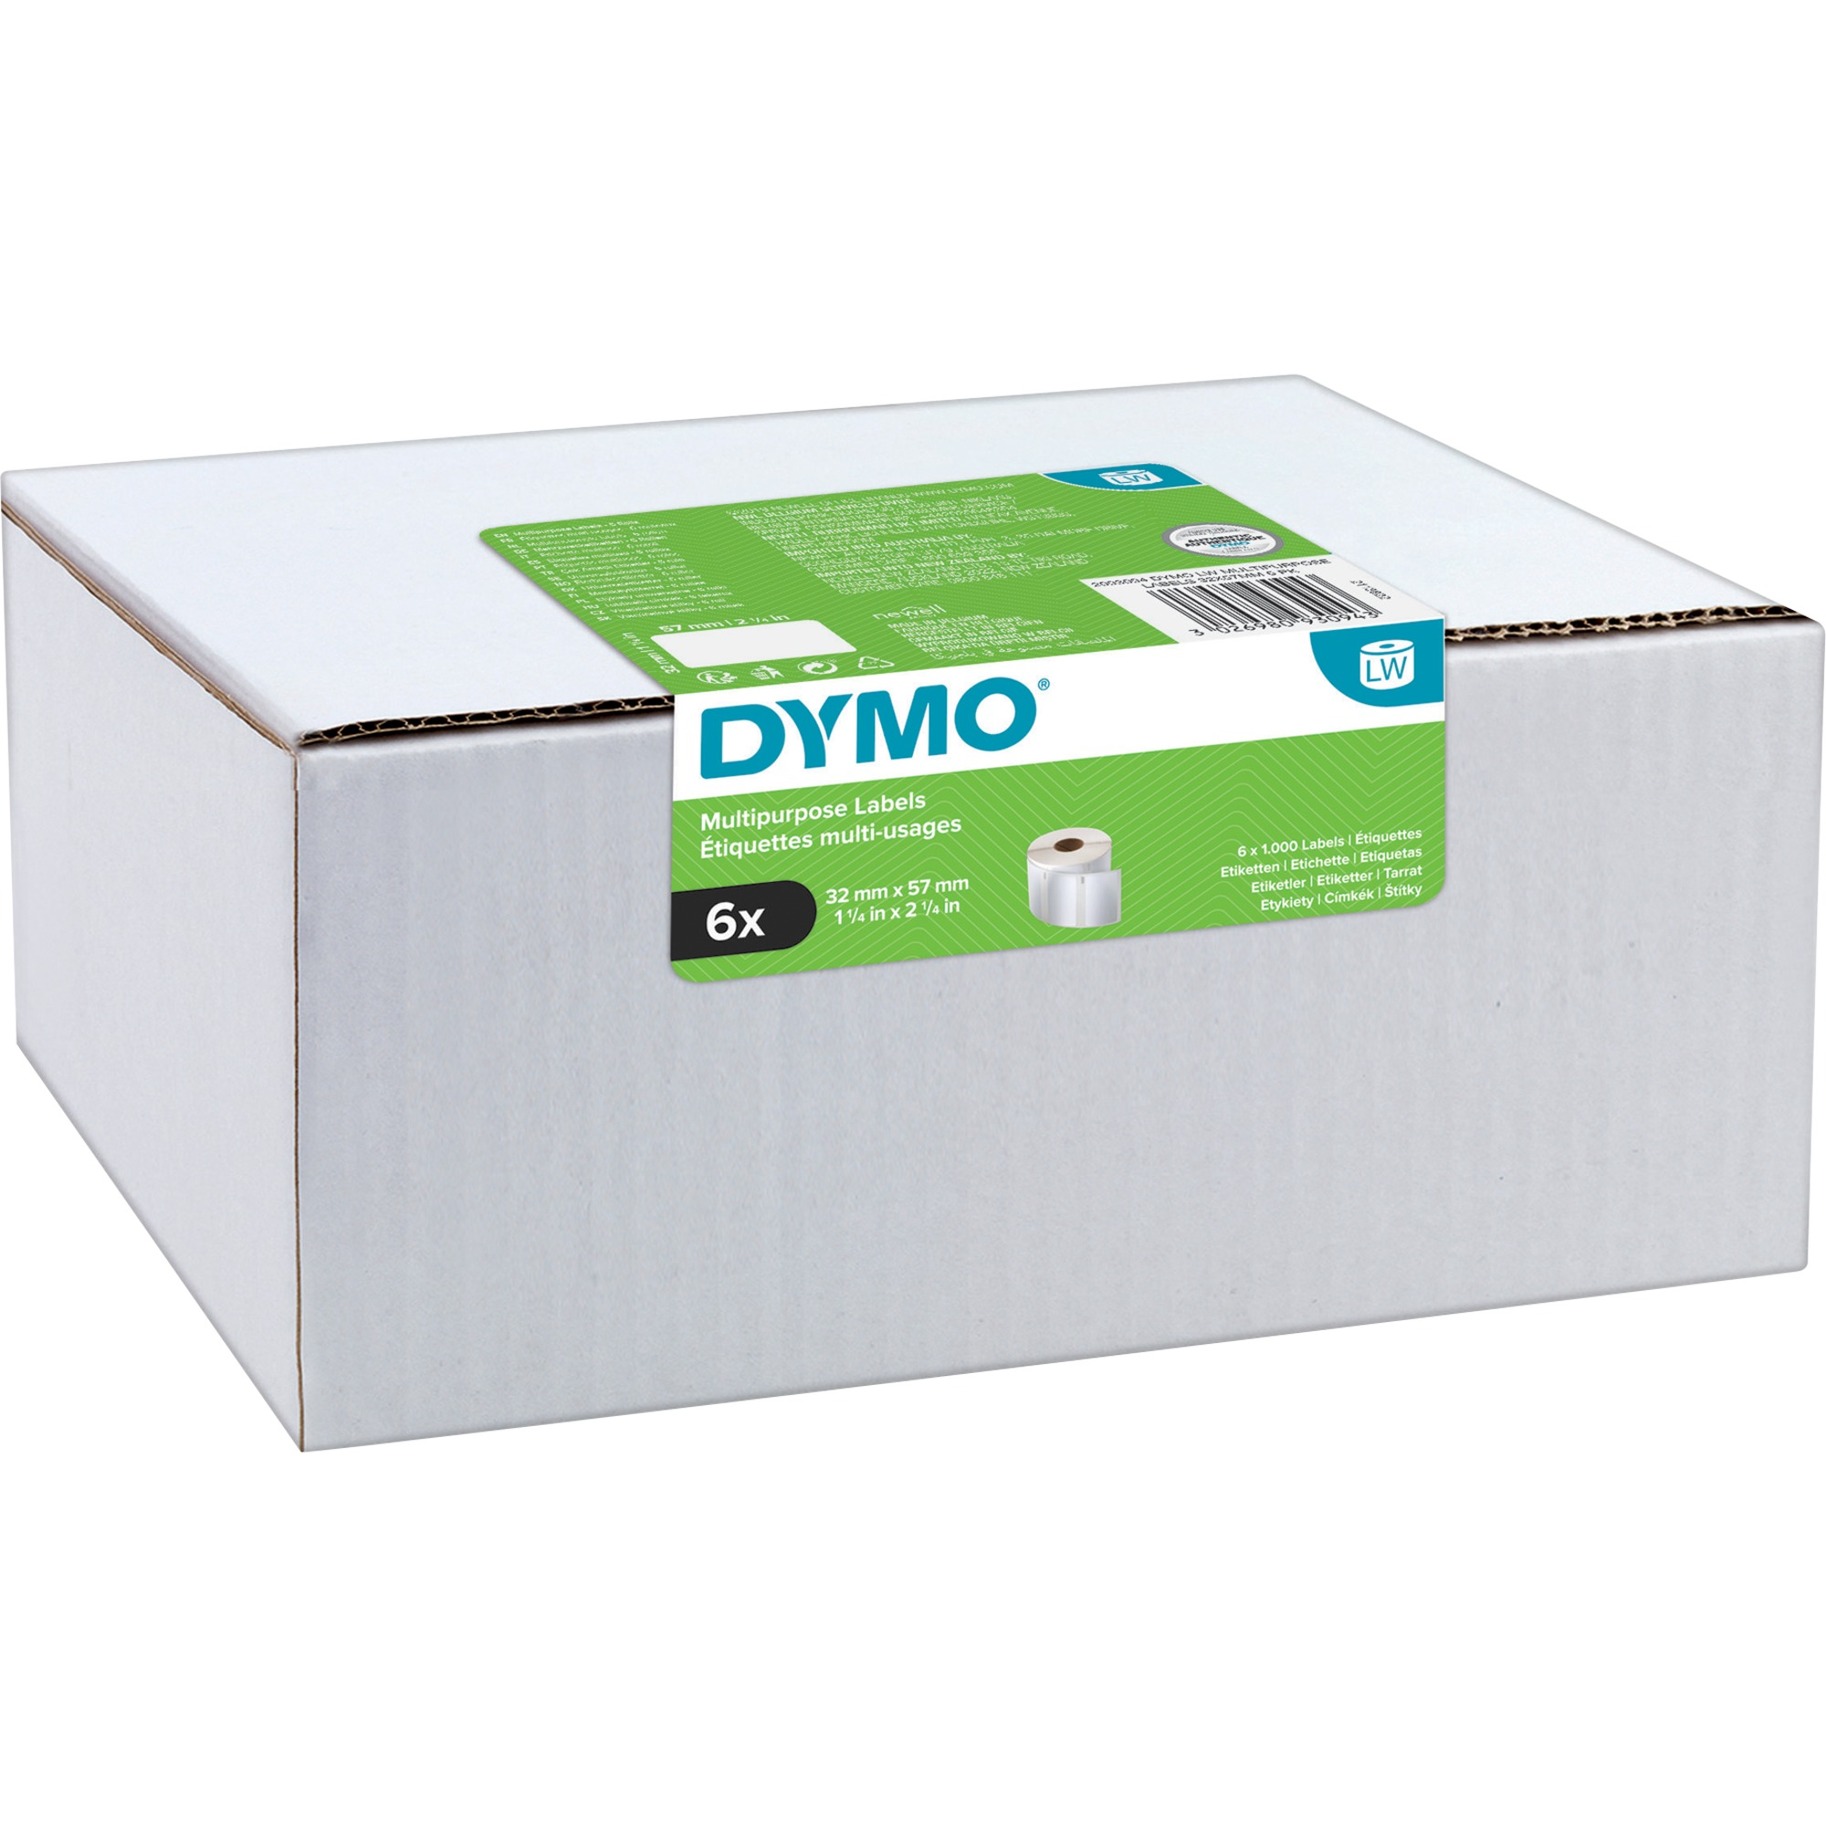 DYMO LW-Mehrzwecketiketten selbstklebend (54 mm x 70 mm, Rolle mit 320 leicht ablösbaren Etiketten, für LabelWriter-Beschriftungsgeräte, authentisches Produkt)